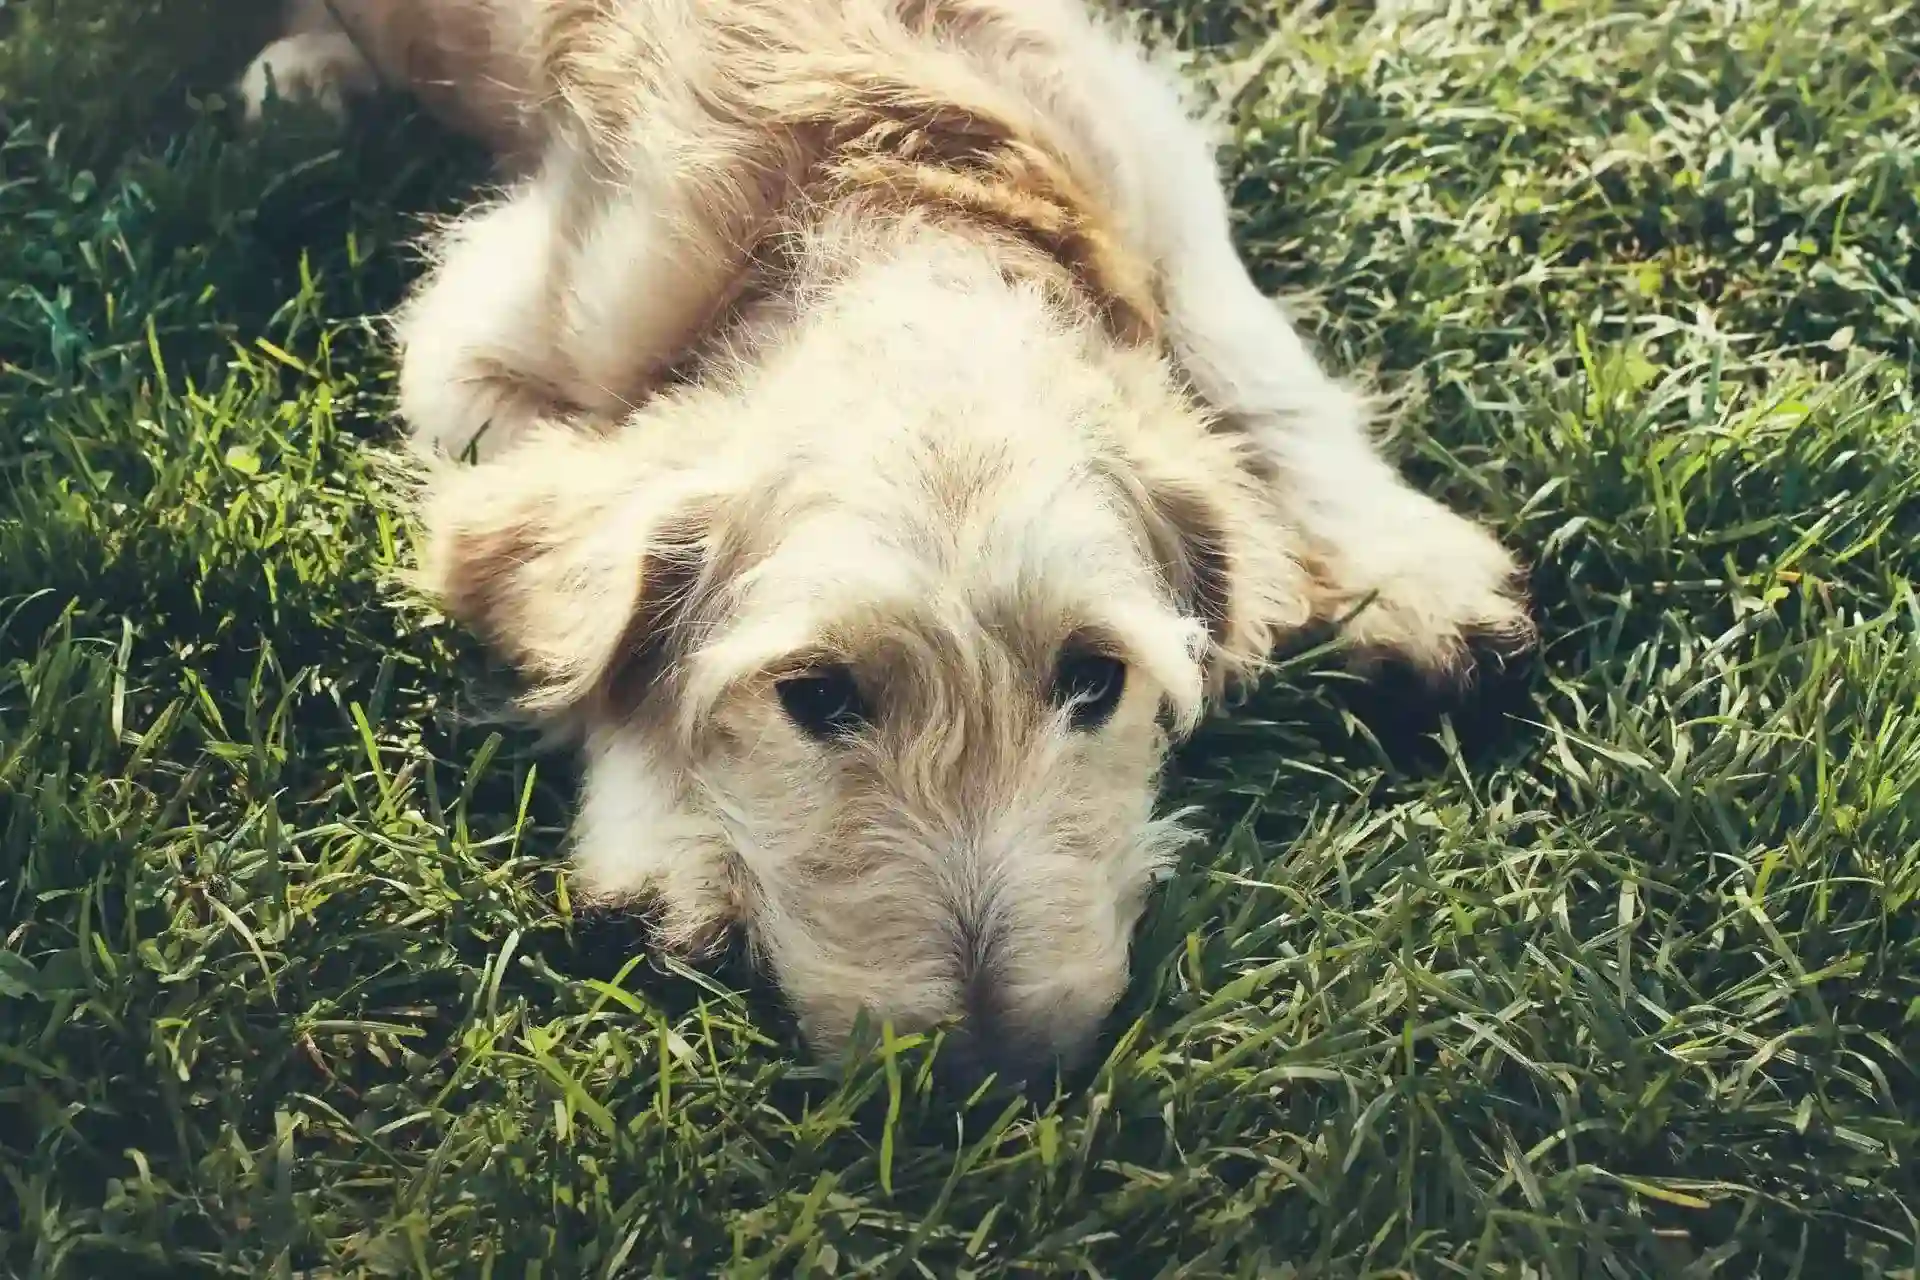 Fluffy light brown dog resting in grass